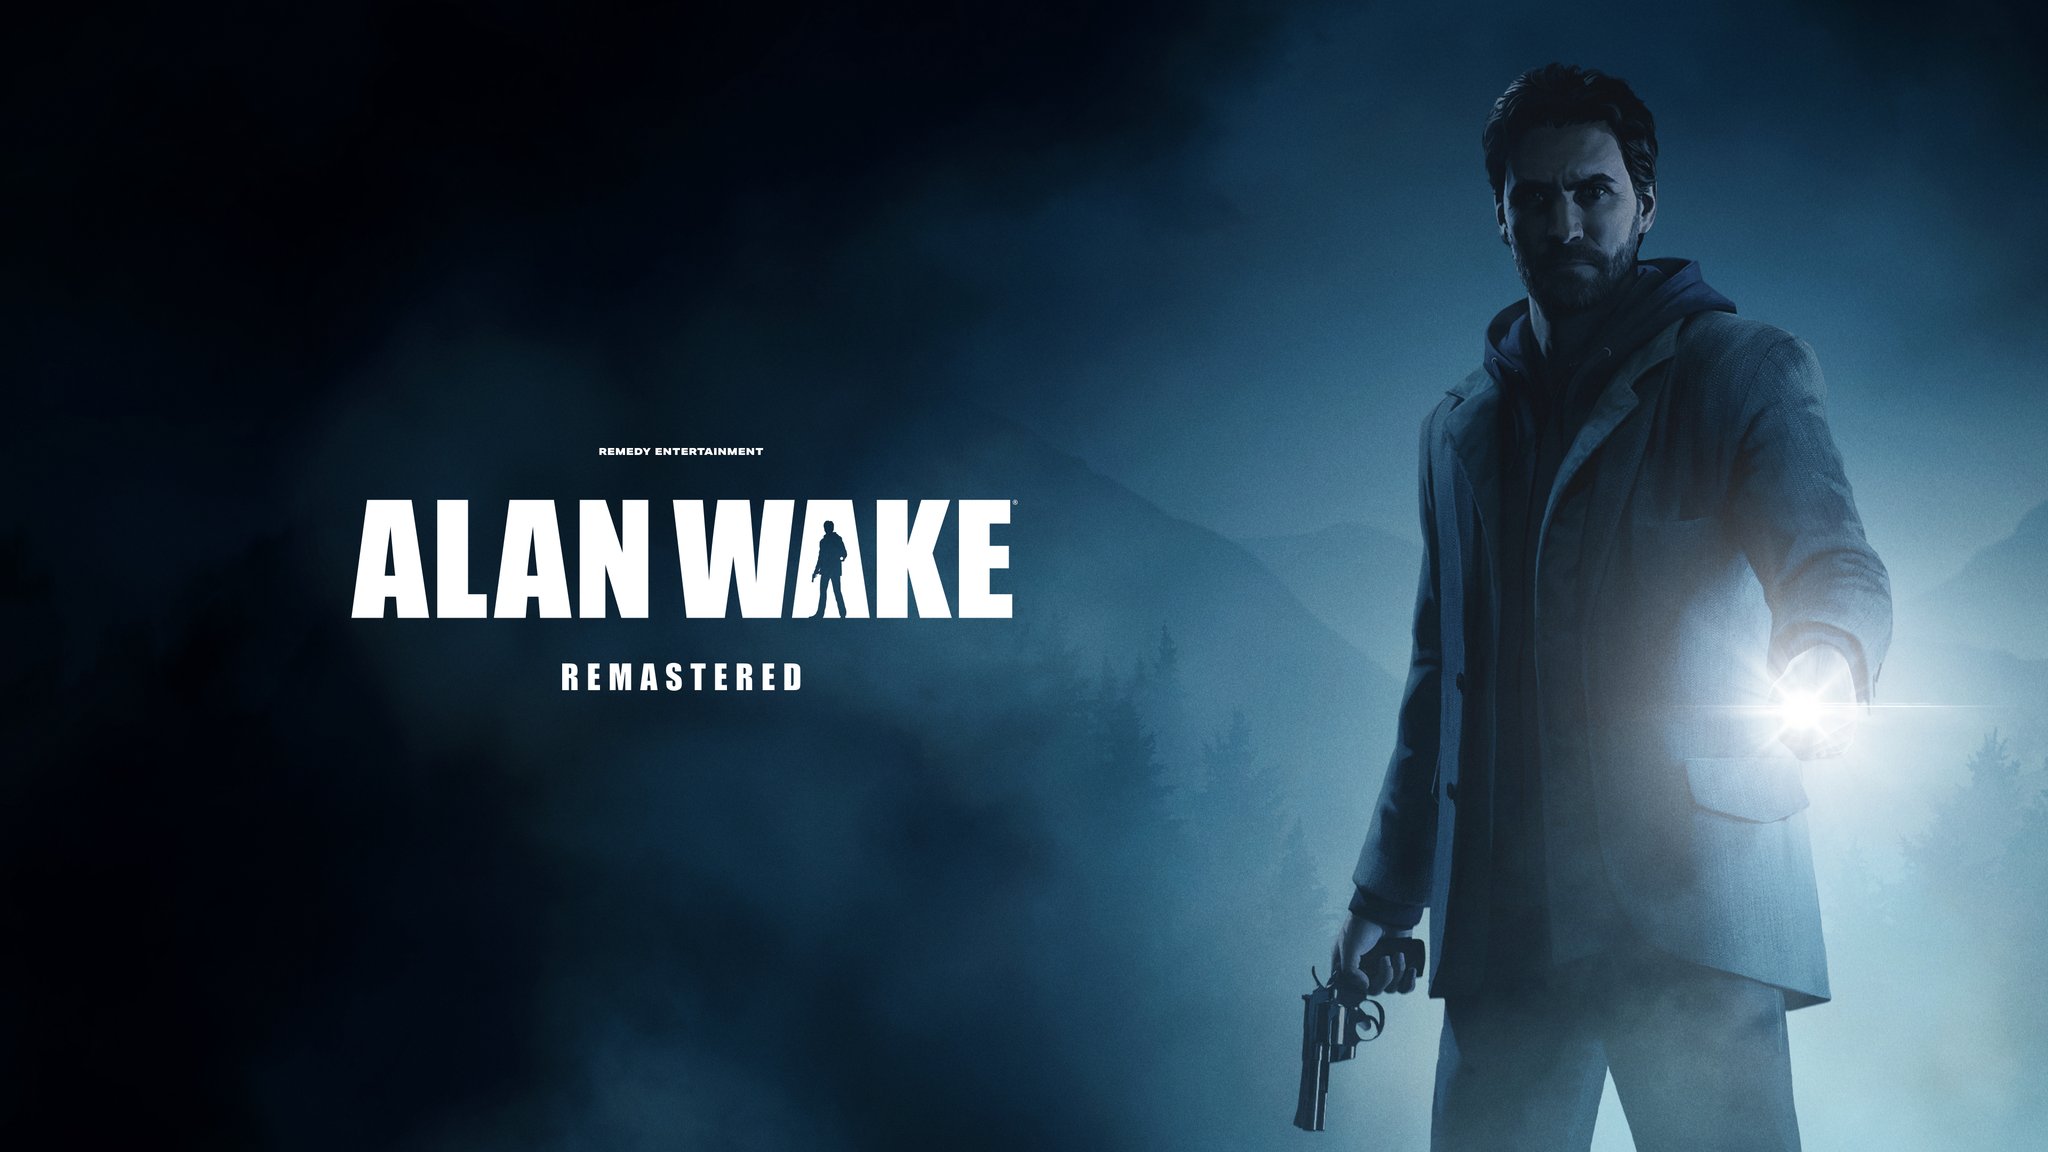 wewnętrzne wskazówki dotyczące zremasterowanej wersji Alan Wake zostaną ogłoszone w przyszłym tygodniu